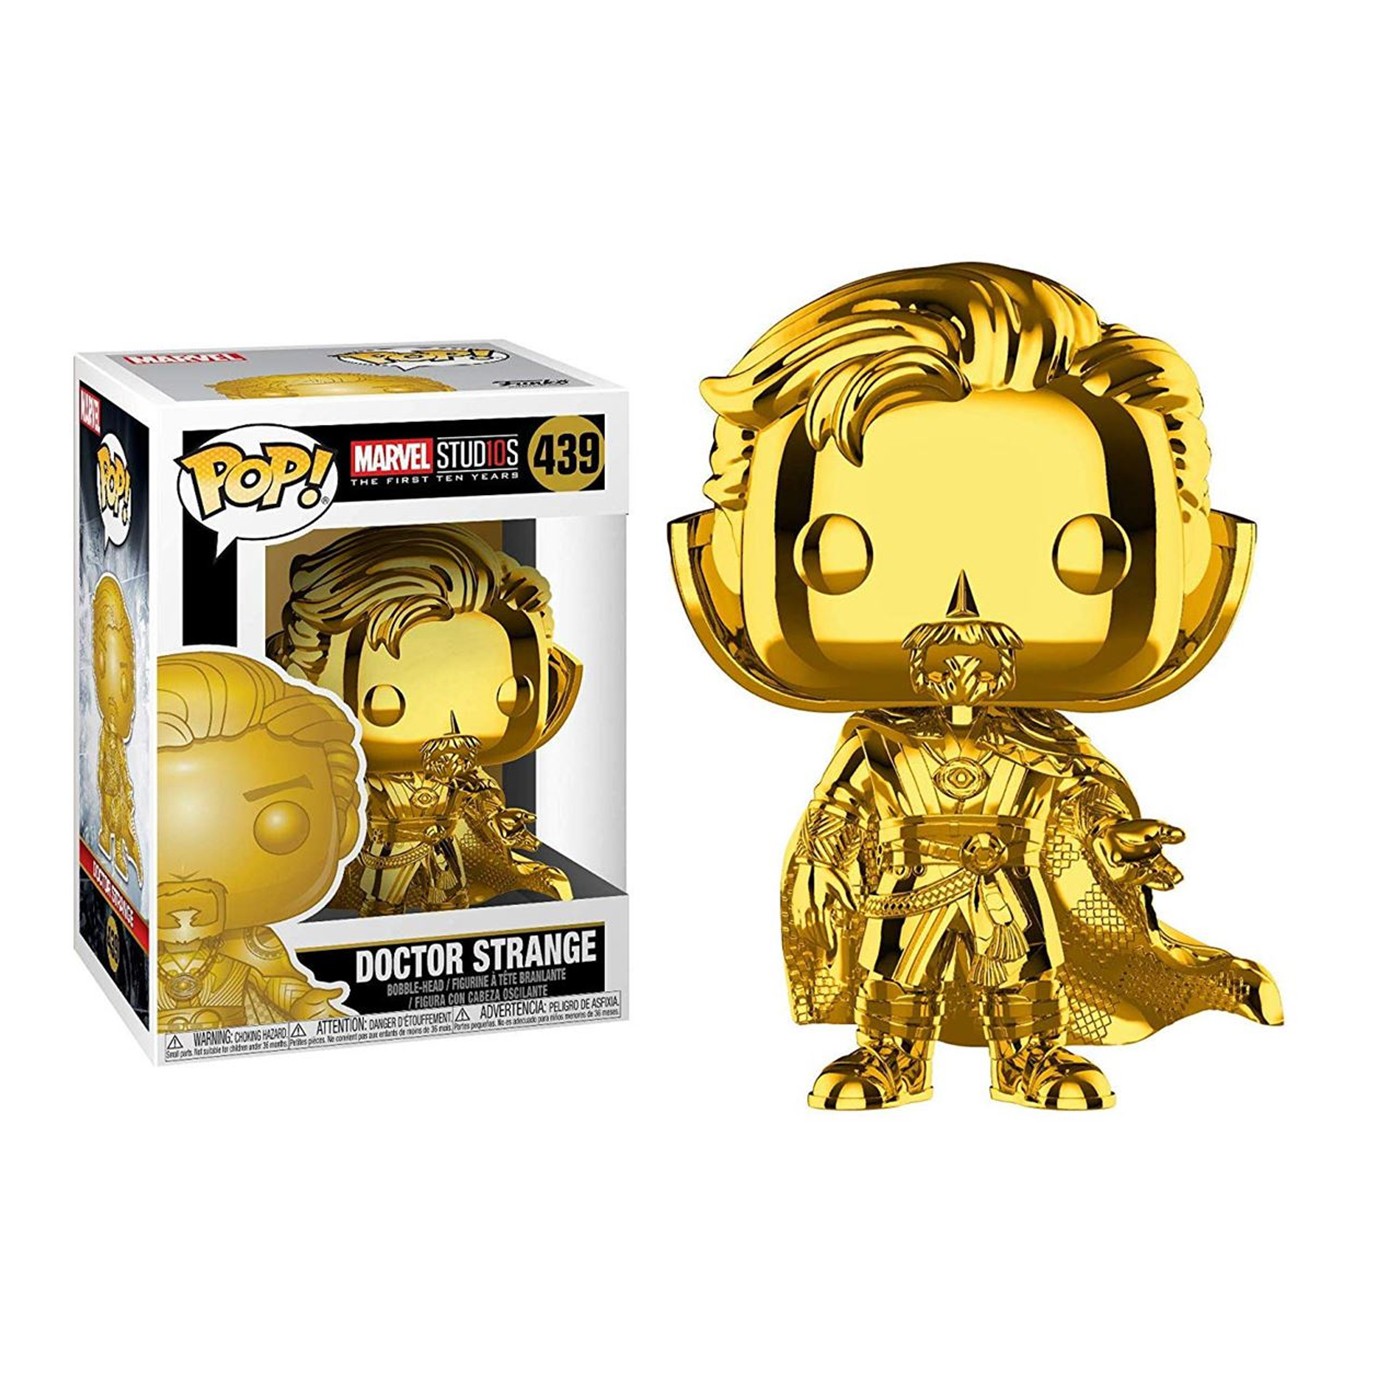 Pop! Marvel: MS 10 - Doctor Strange Gold Bobblehead